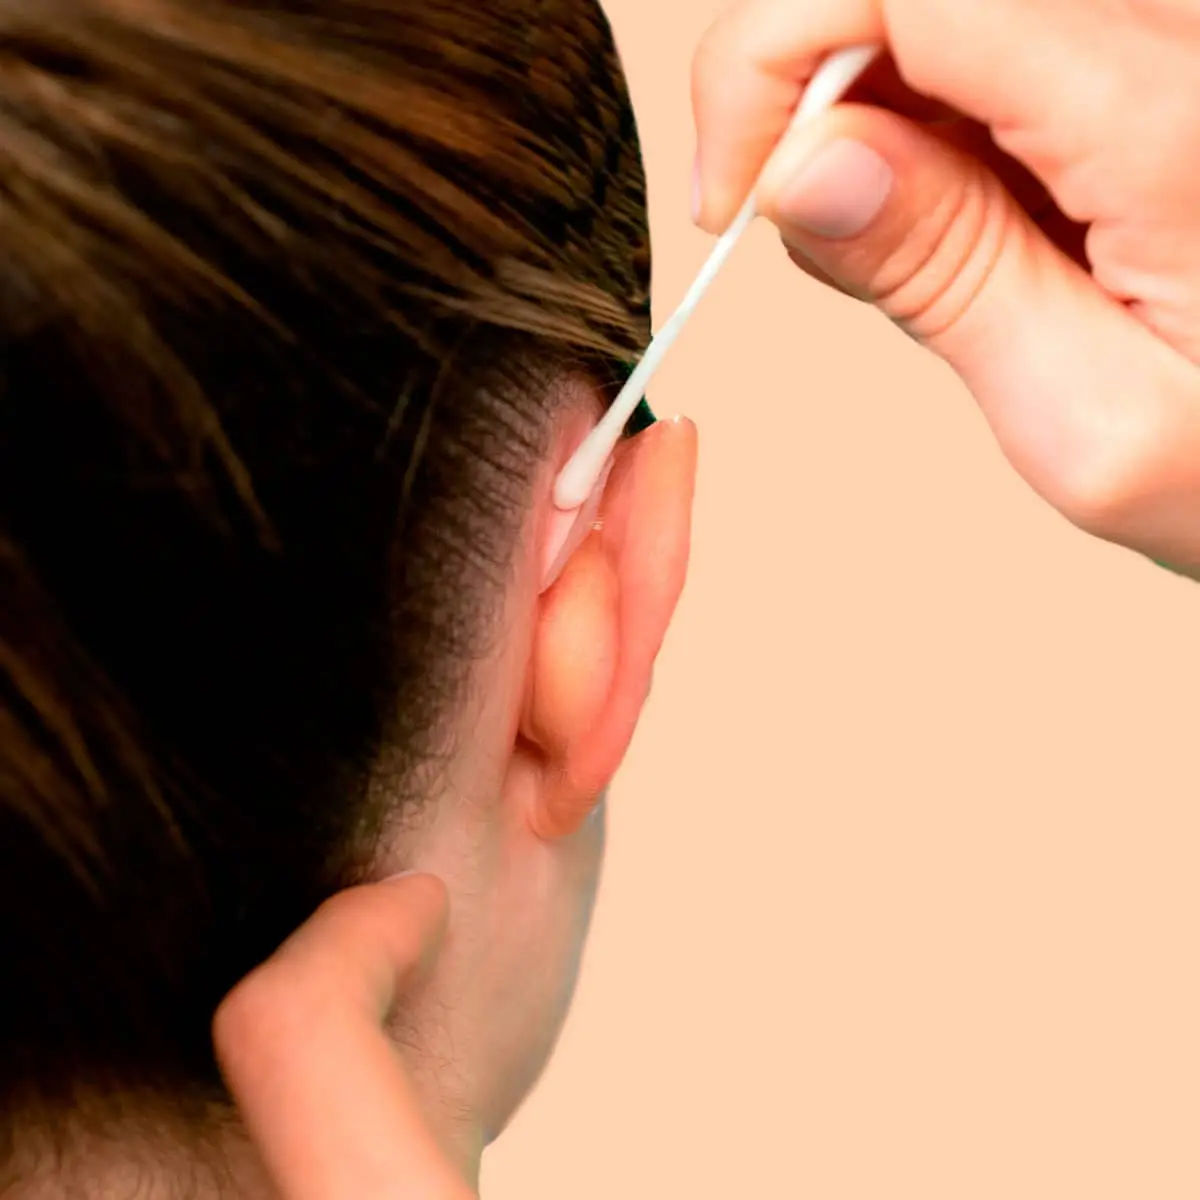 Otostick, corrector estético para orejas - FarmaInstant Blog